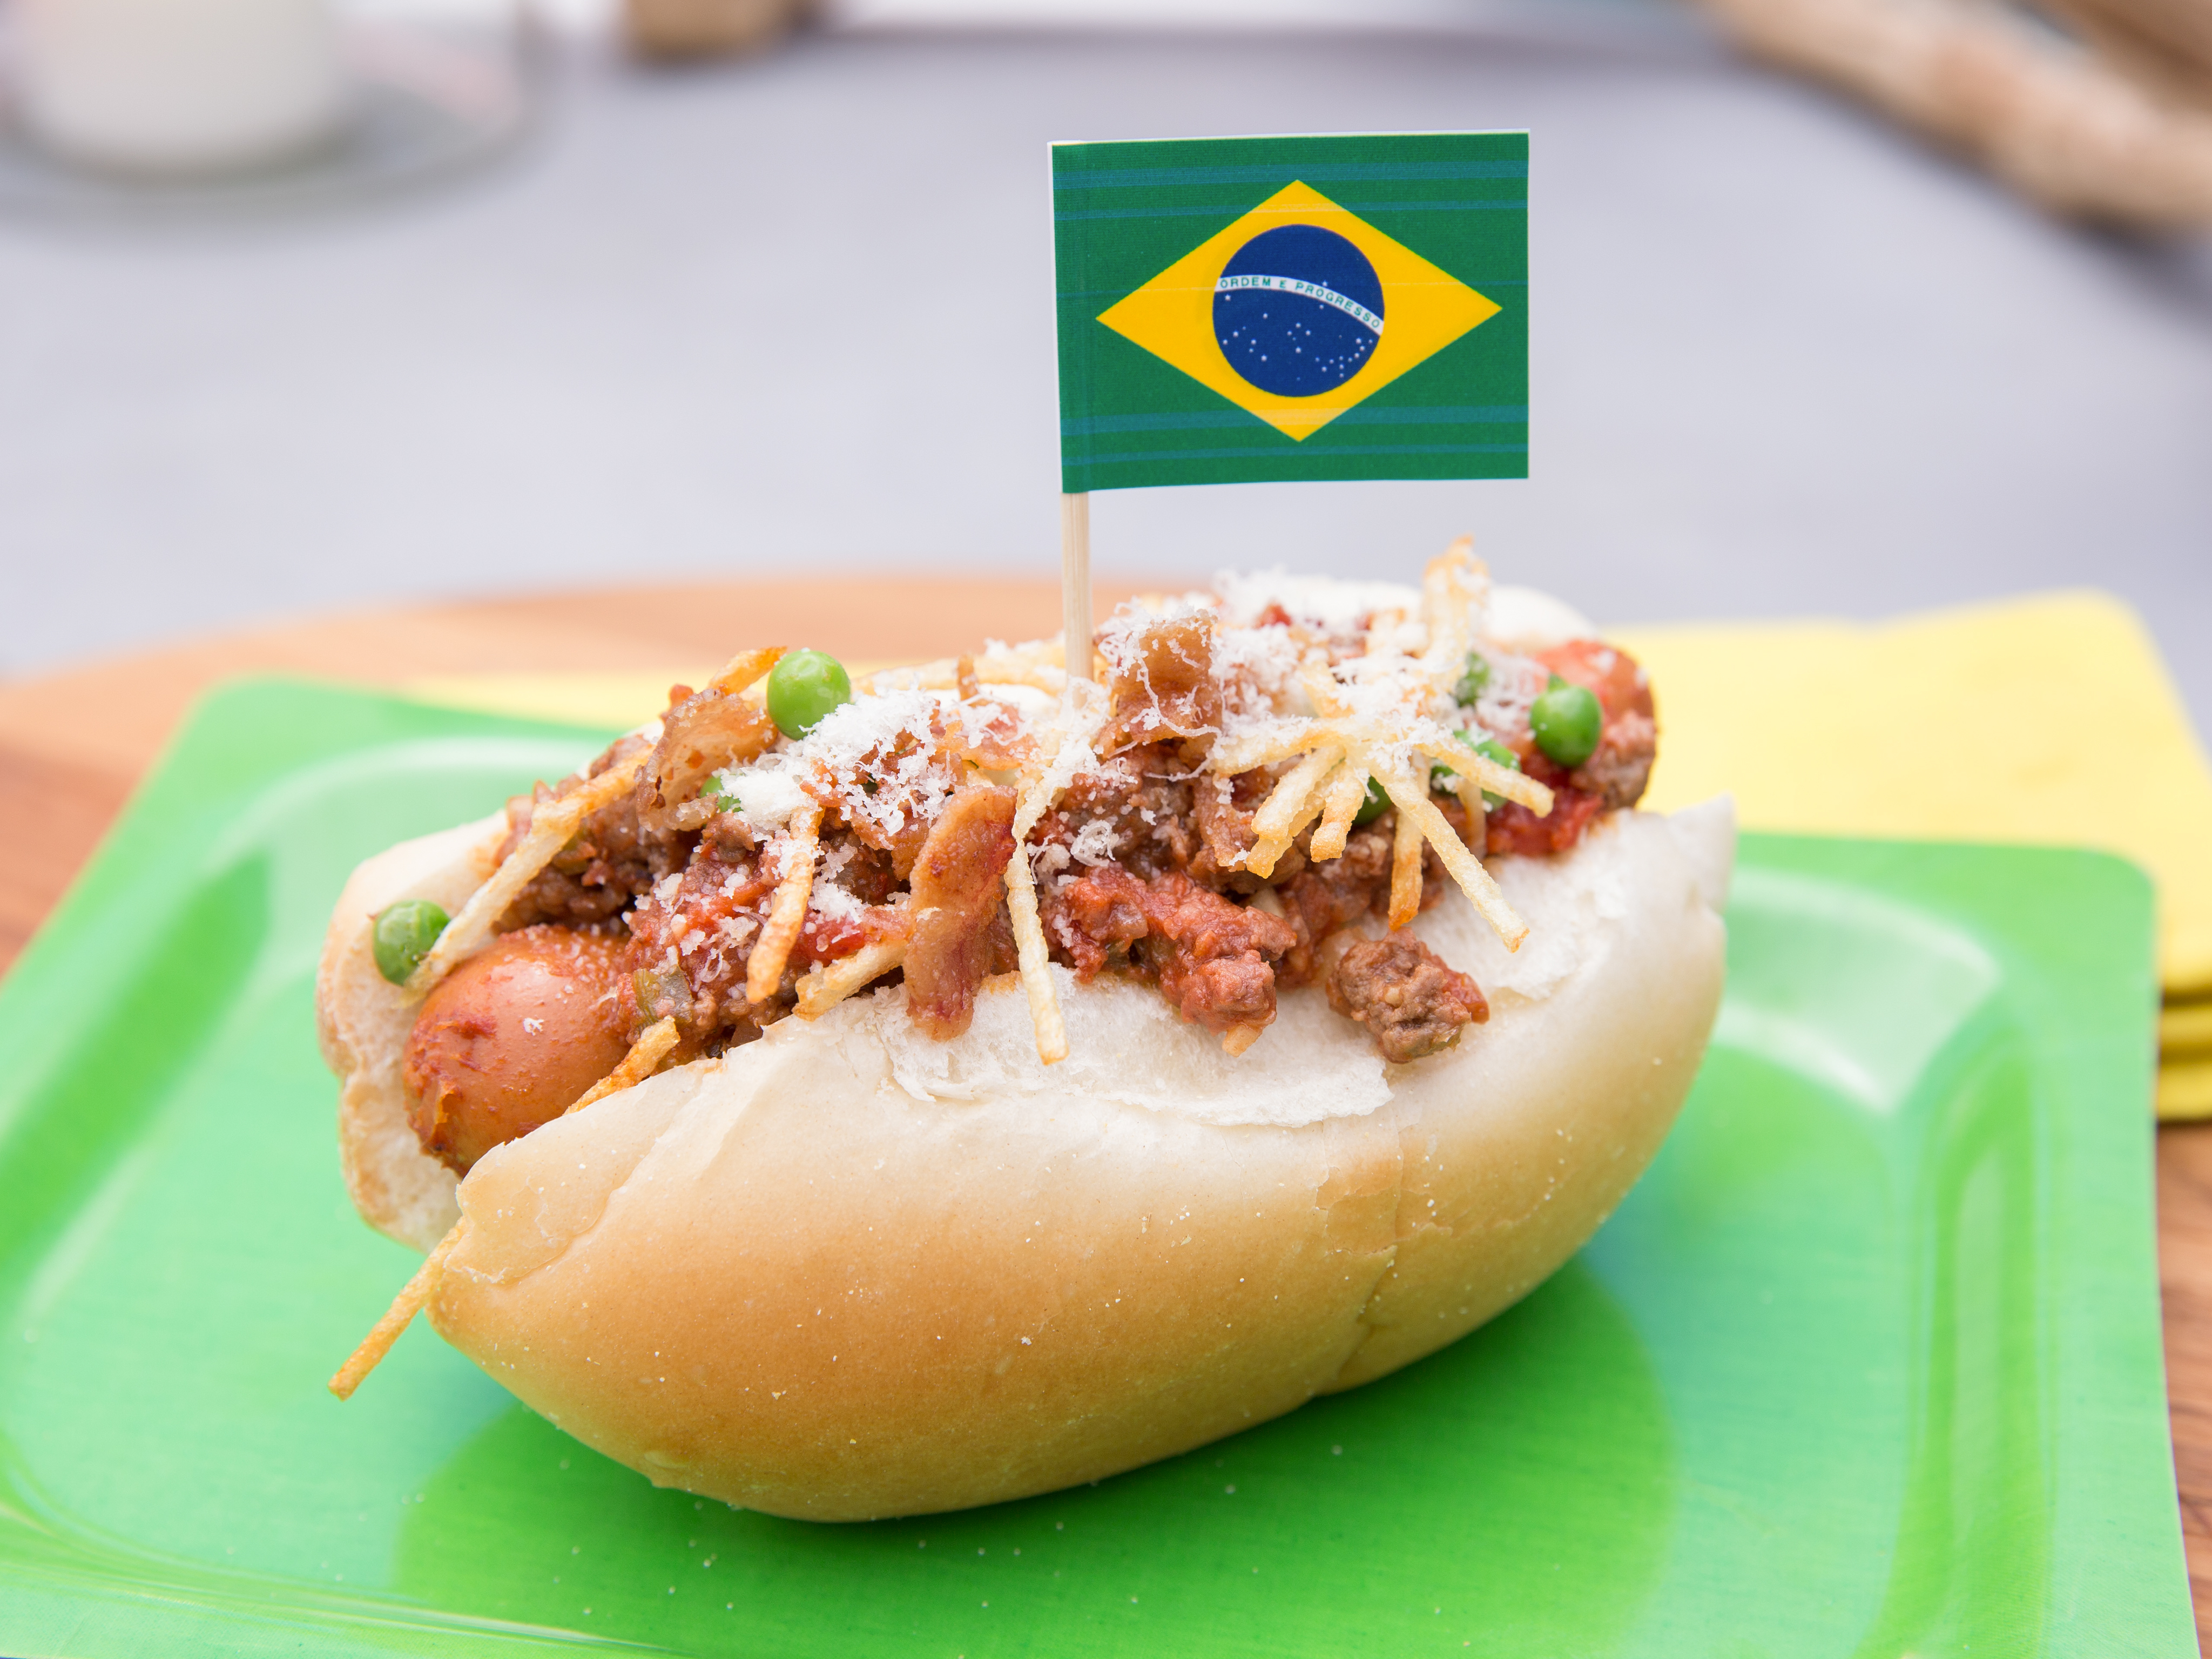 Brazilian Treats: 'Hotchy Doggy